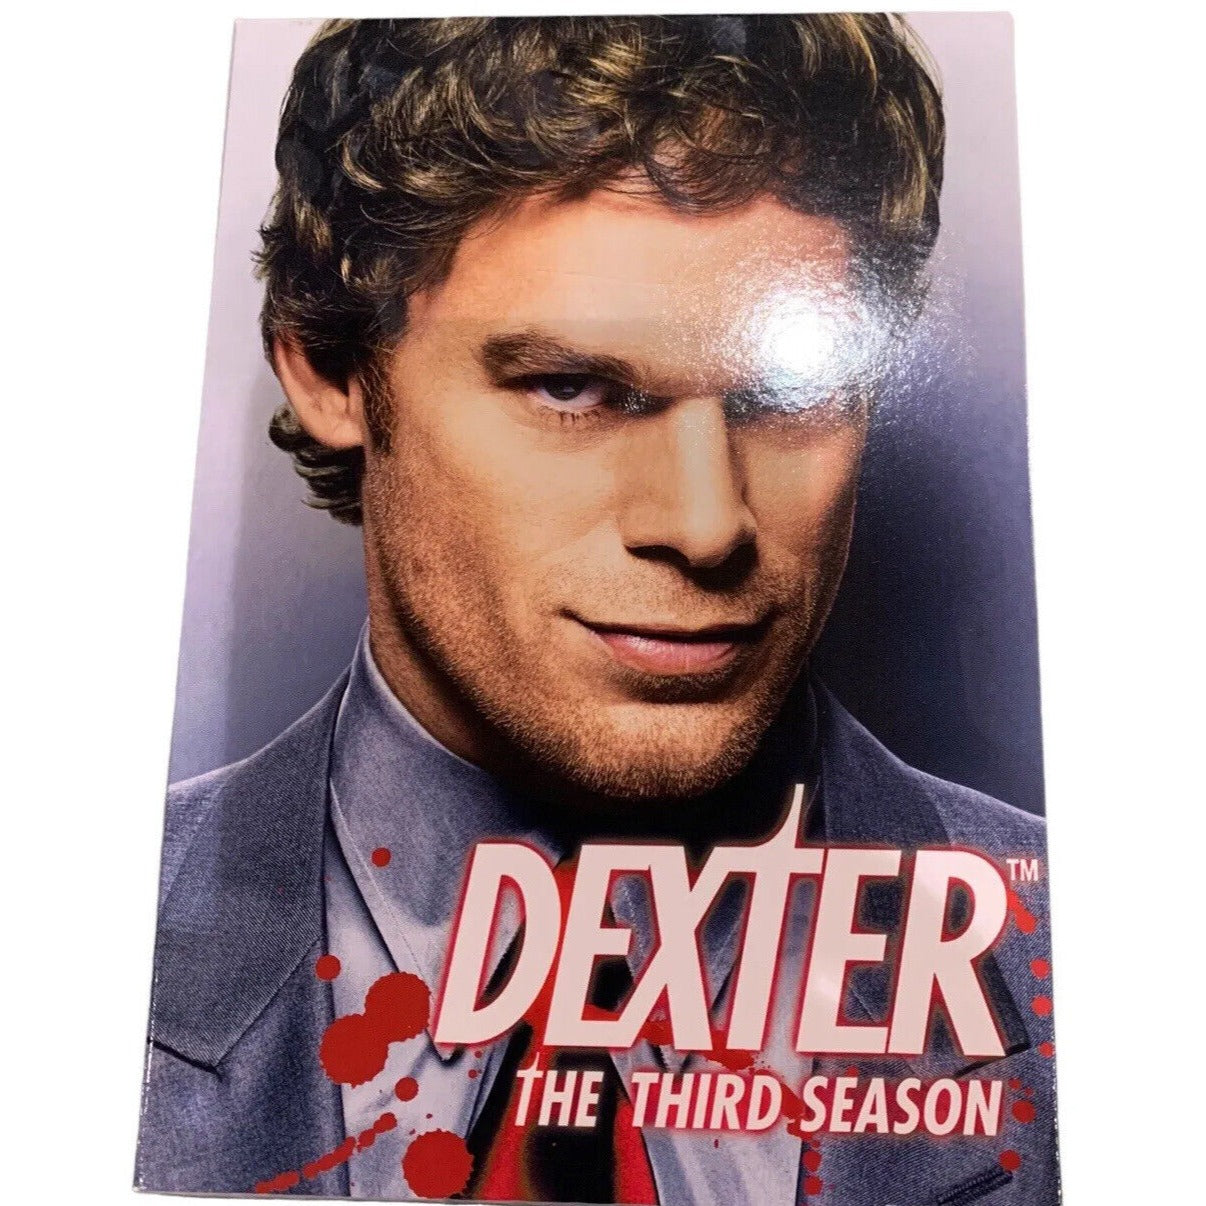 Dexter: The Third Season (DVD, 2008)